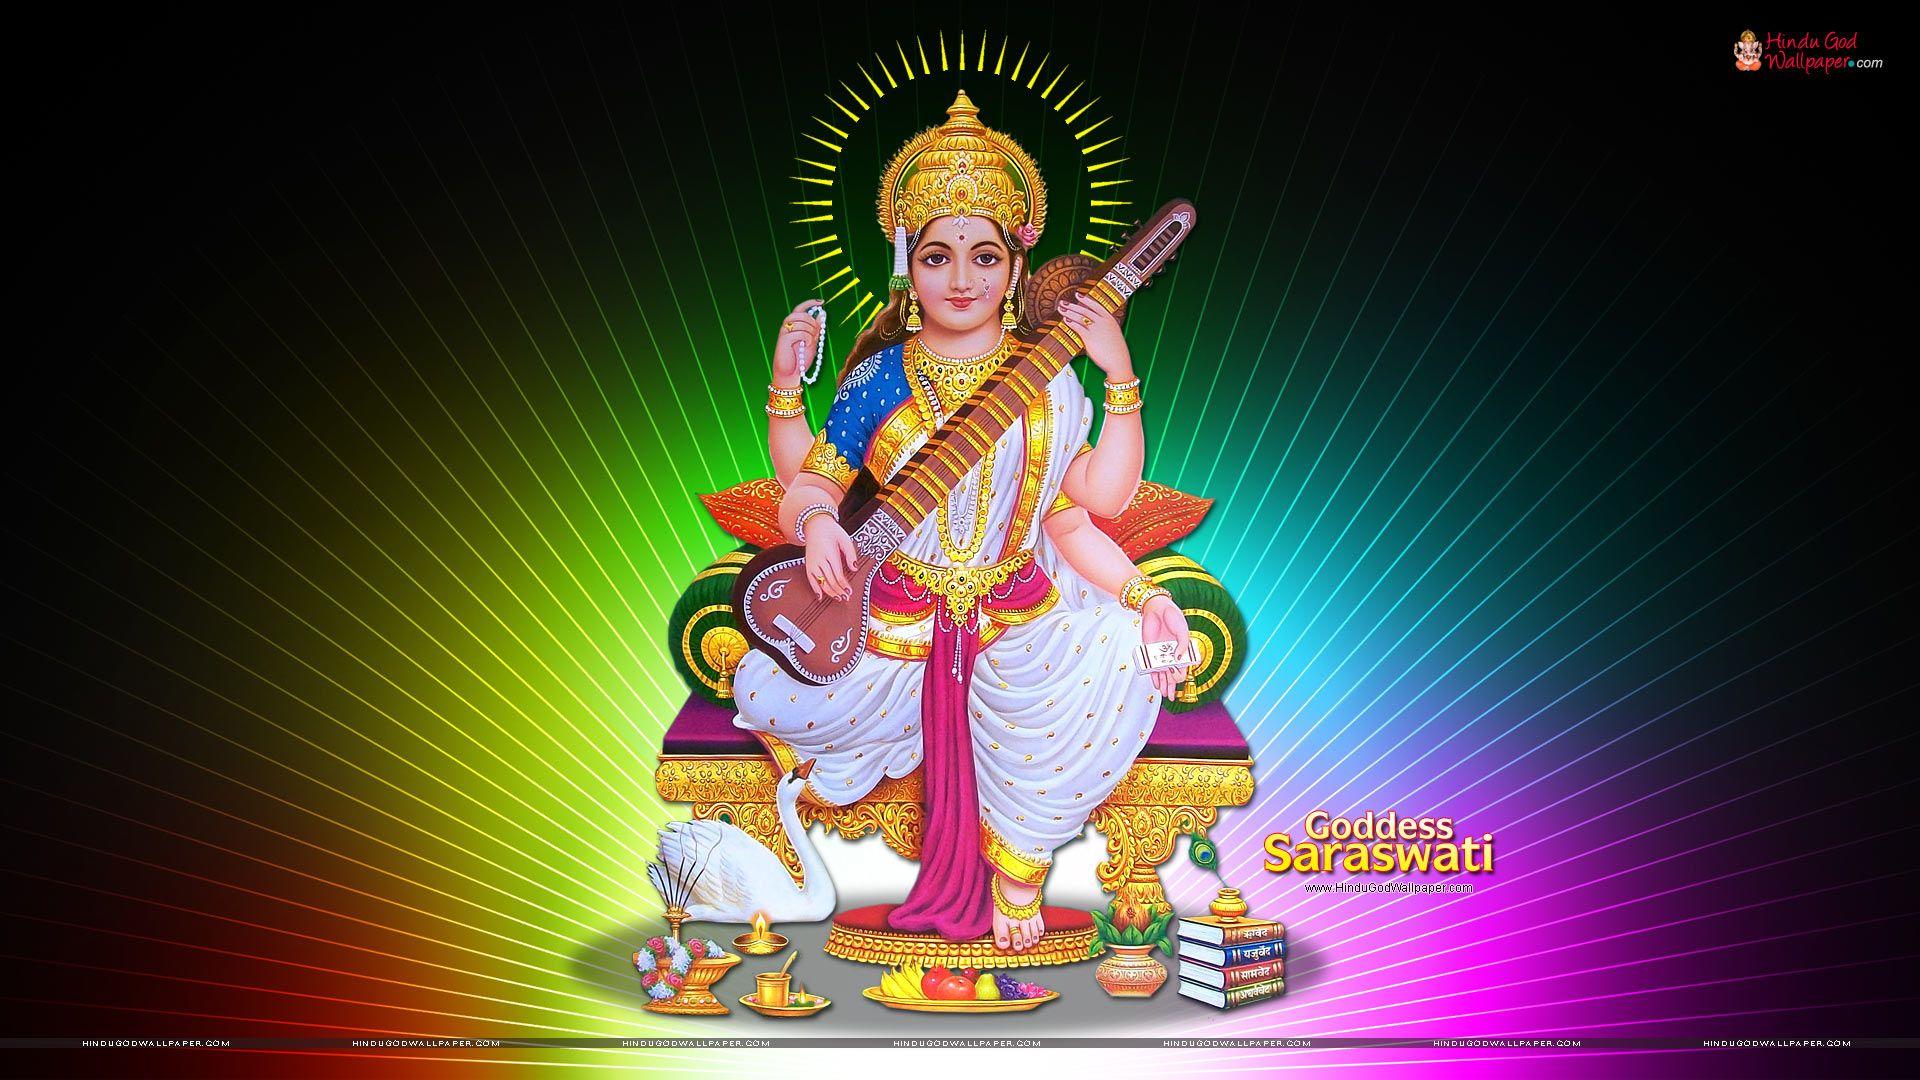 Goddess Saraswati HD Wallpaper, Image, Photo Free Download